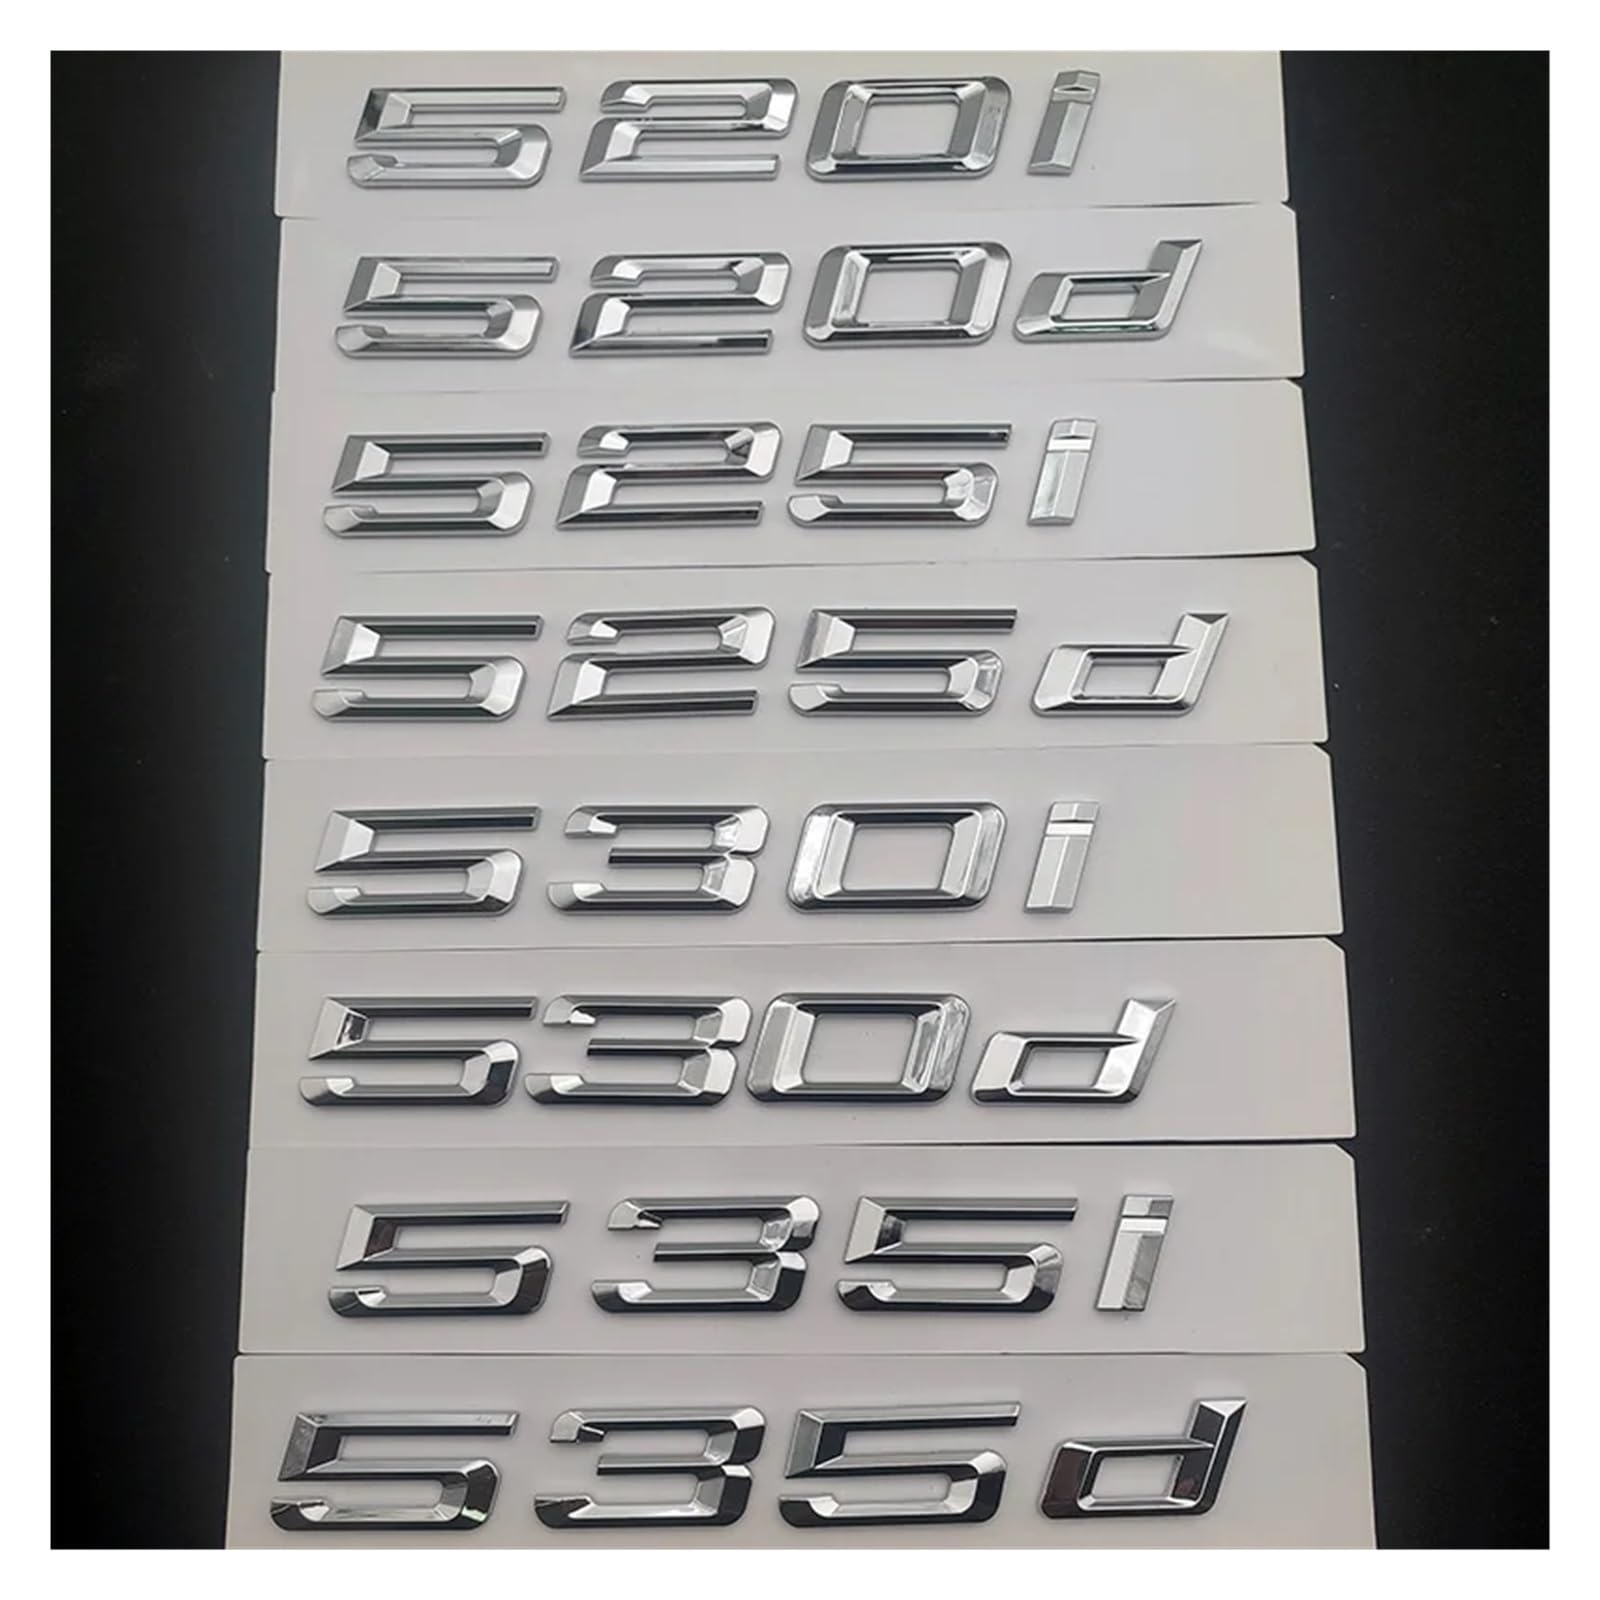 YSRWTBBA 3D-ABS-Emblem for den Kofferraum, schwarz, kompatibel mit 518d 520i 520d 530i 535i 535d 530d E60 E39 F10, Logo-Schriftzug, Aufkleber, Zubehör, einfach abziehen und abz von YSRWTBBA